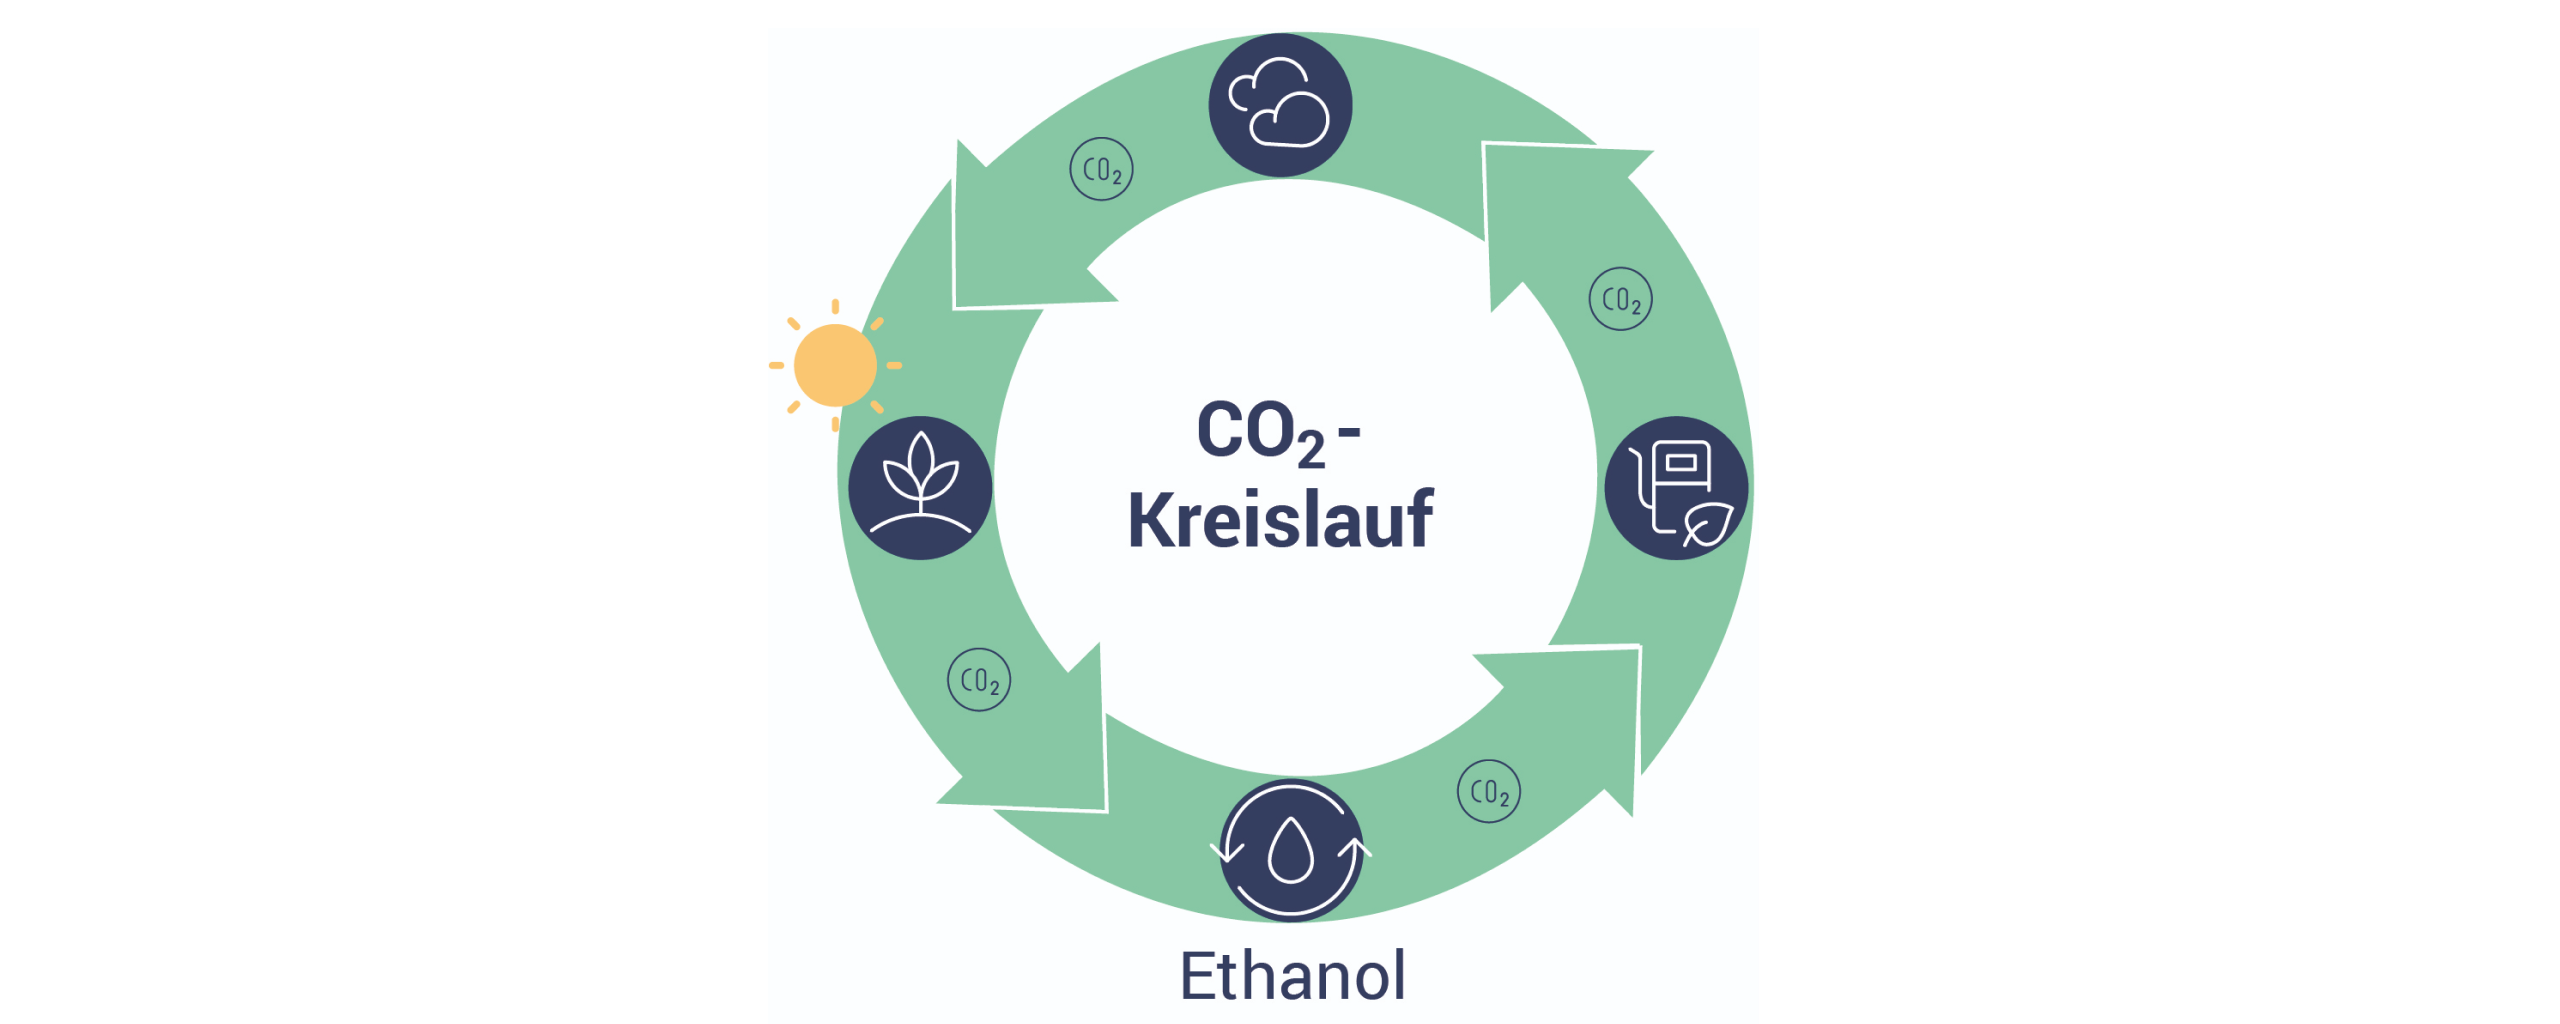 Das Bild beschreibt den Kreislauf von Bioethanol und CO2.